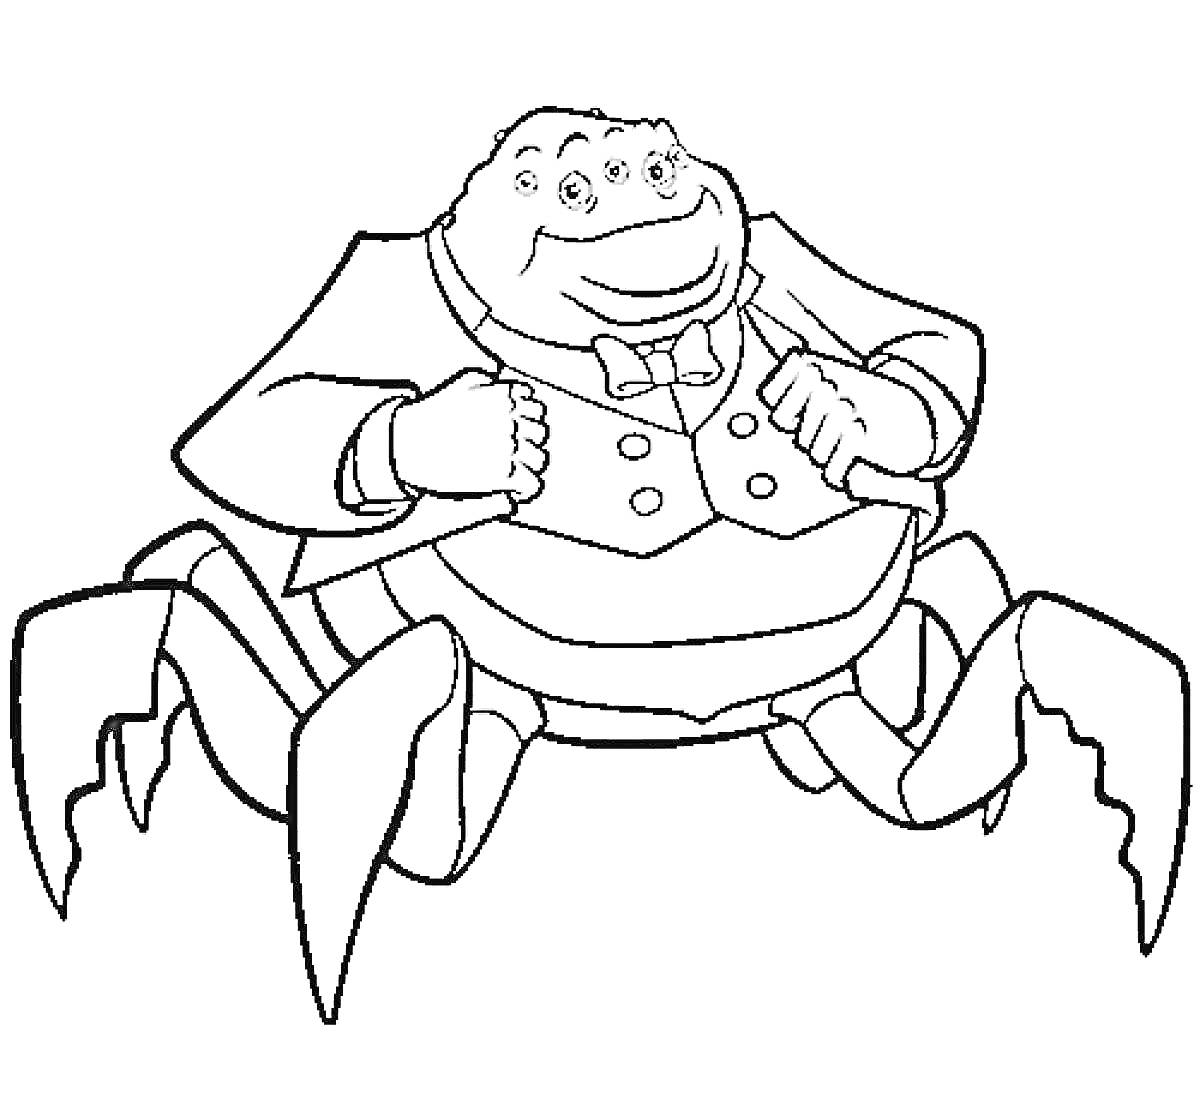 Раскраска Человекоподобный монстр-паук в костюме с бантом и шестью лапами